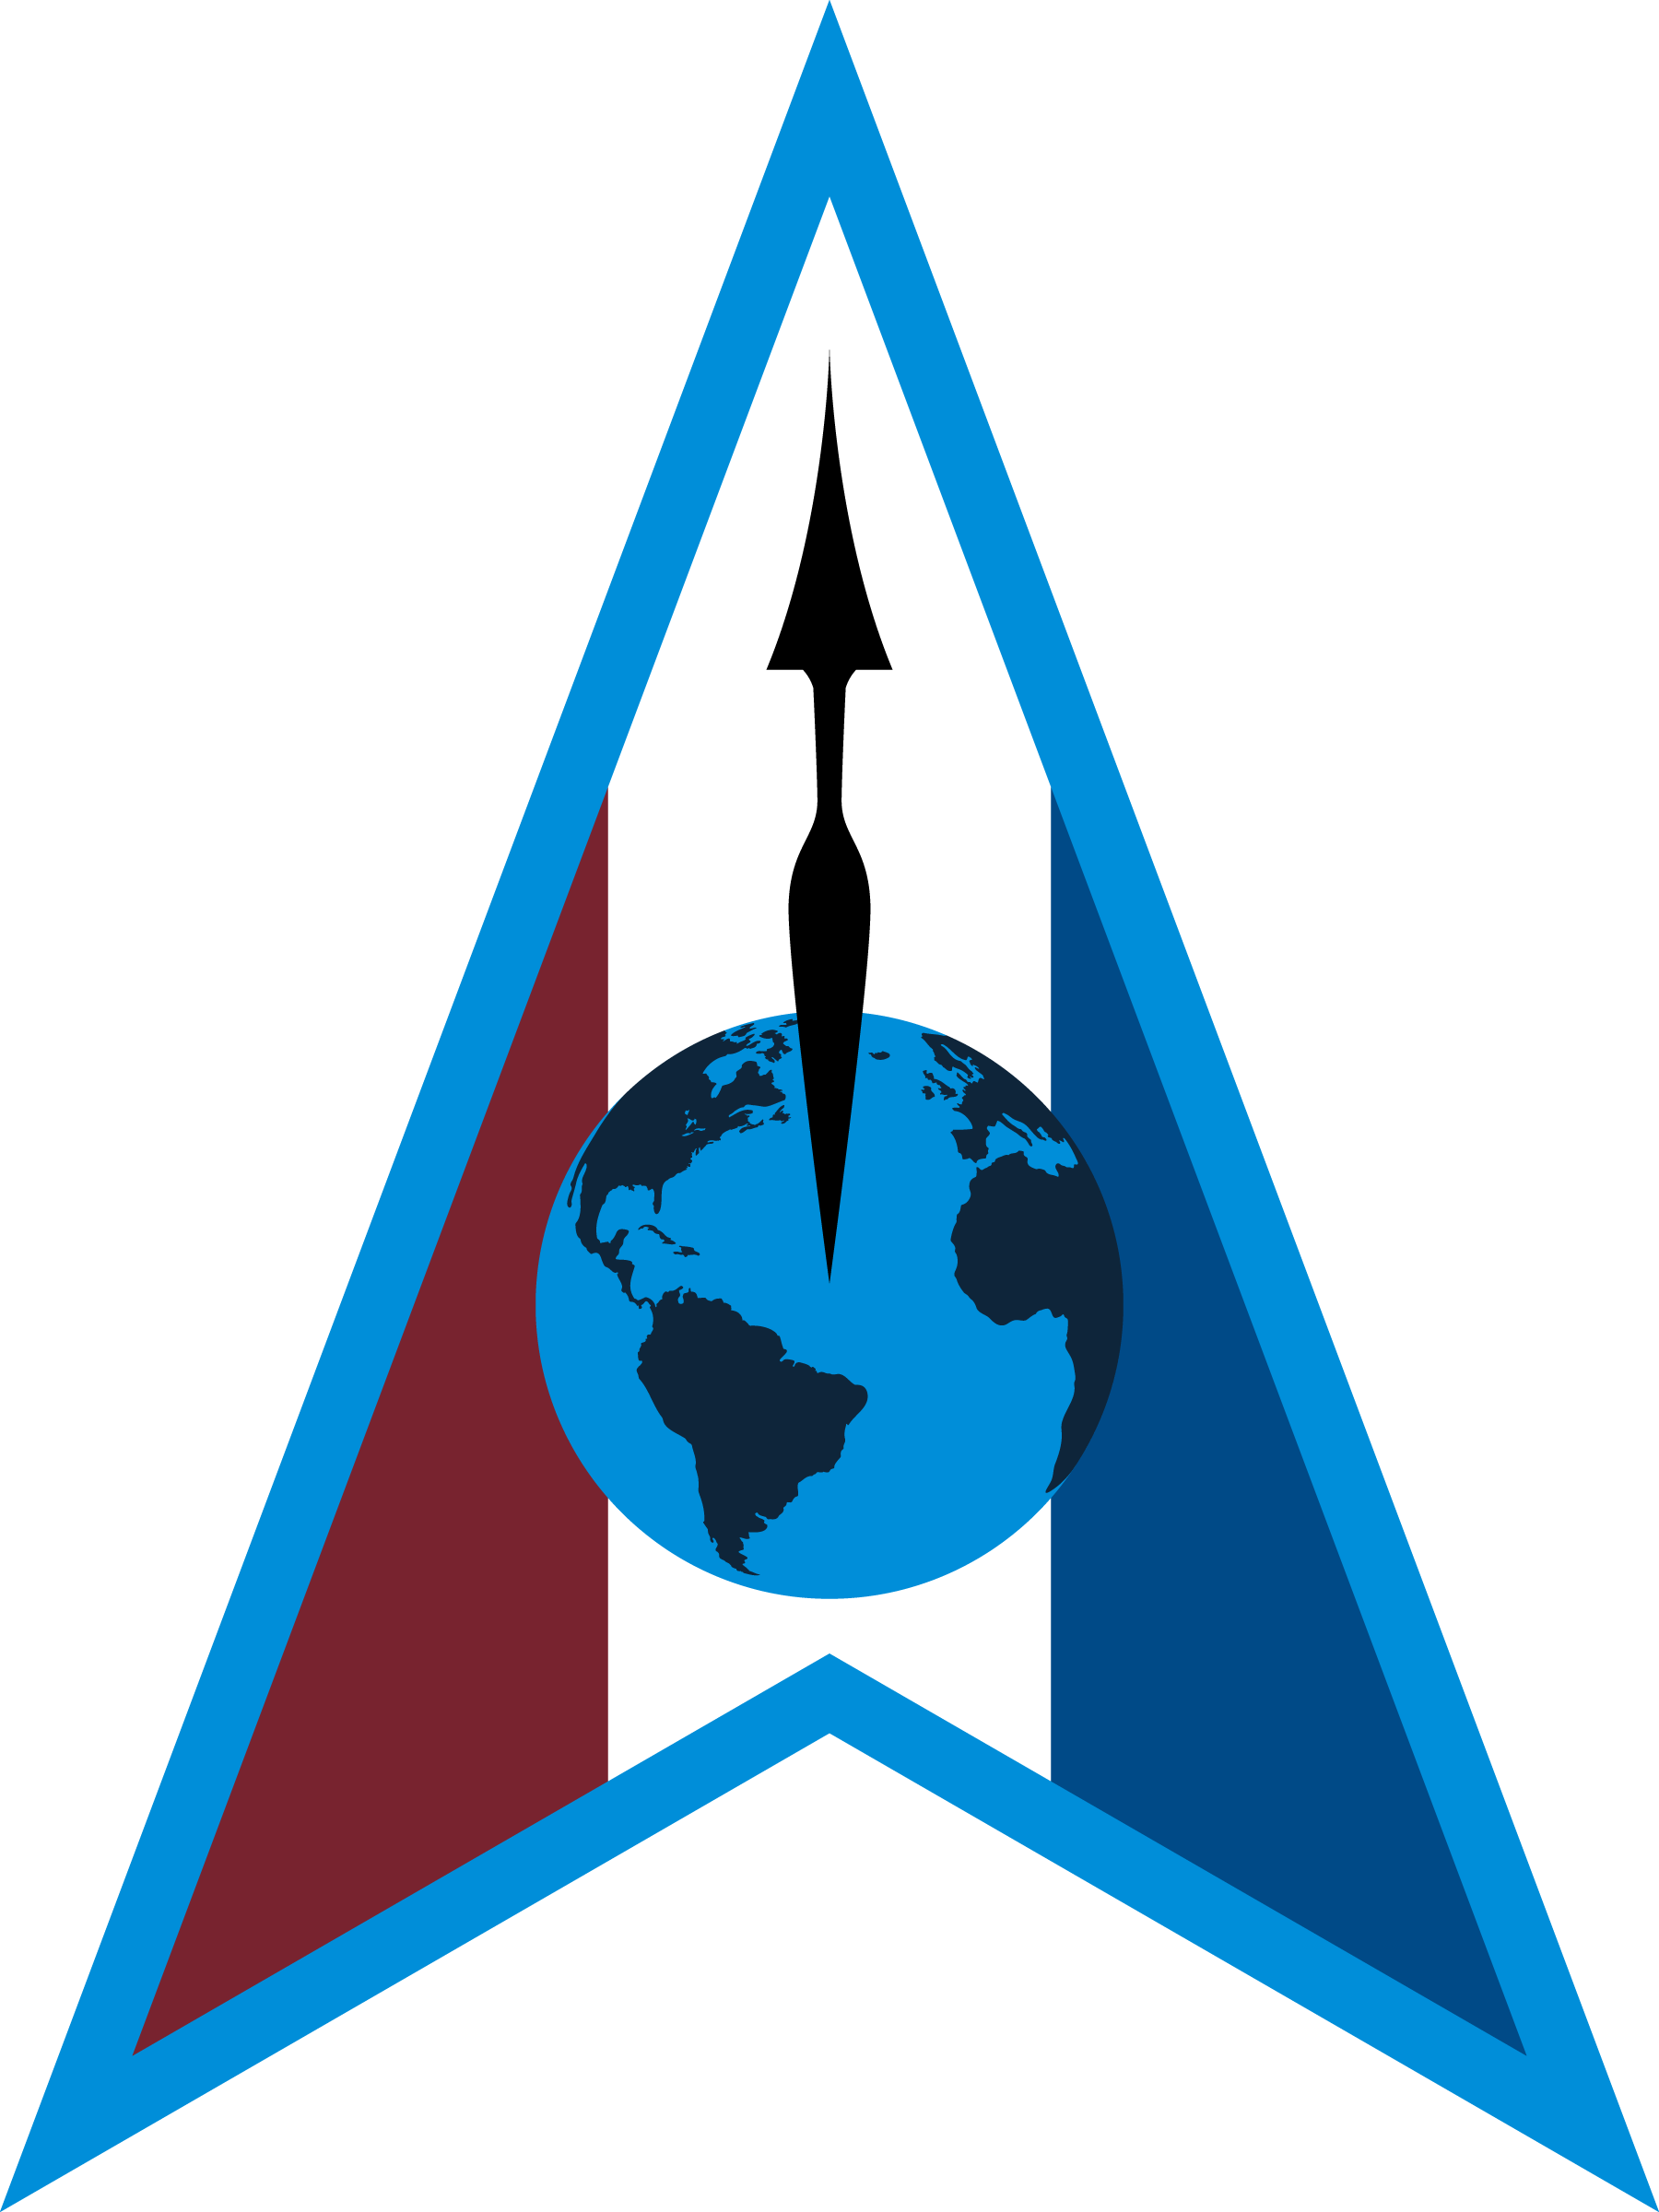 Space Delta 1 emblem.png